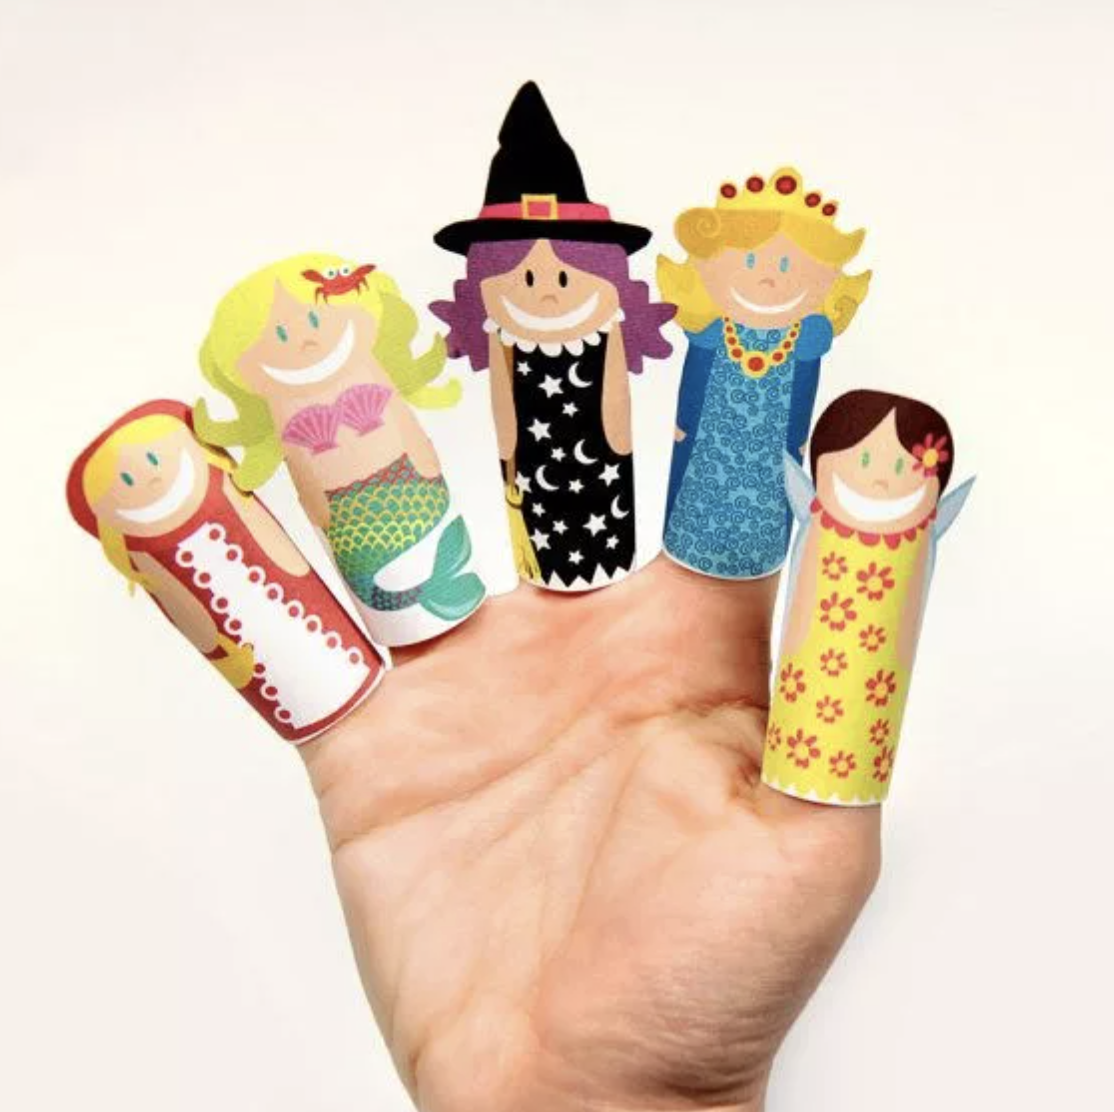 Пальчиковые куклы из бумаги. Пальчиковые куклы. Пальчиковые игрушки для детей. Игрушки на пальчики. Бумажные игрушки на пальцы.